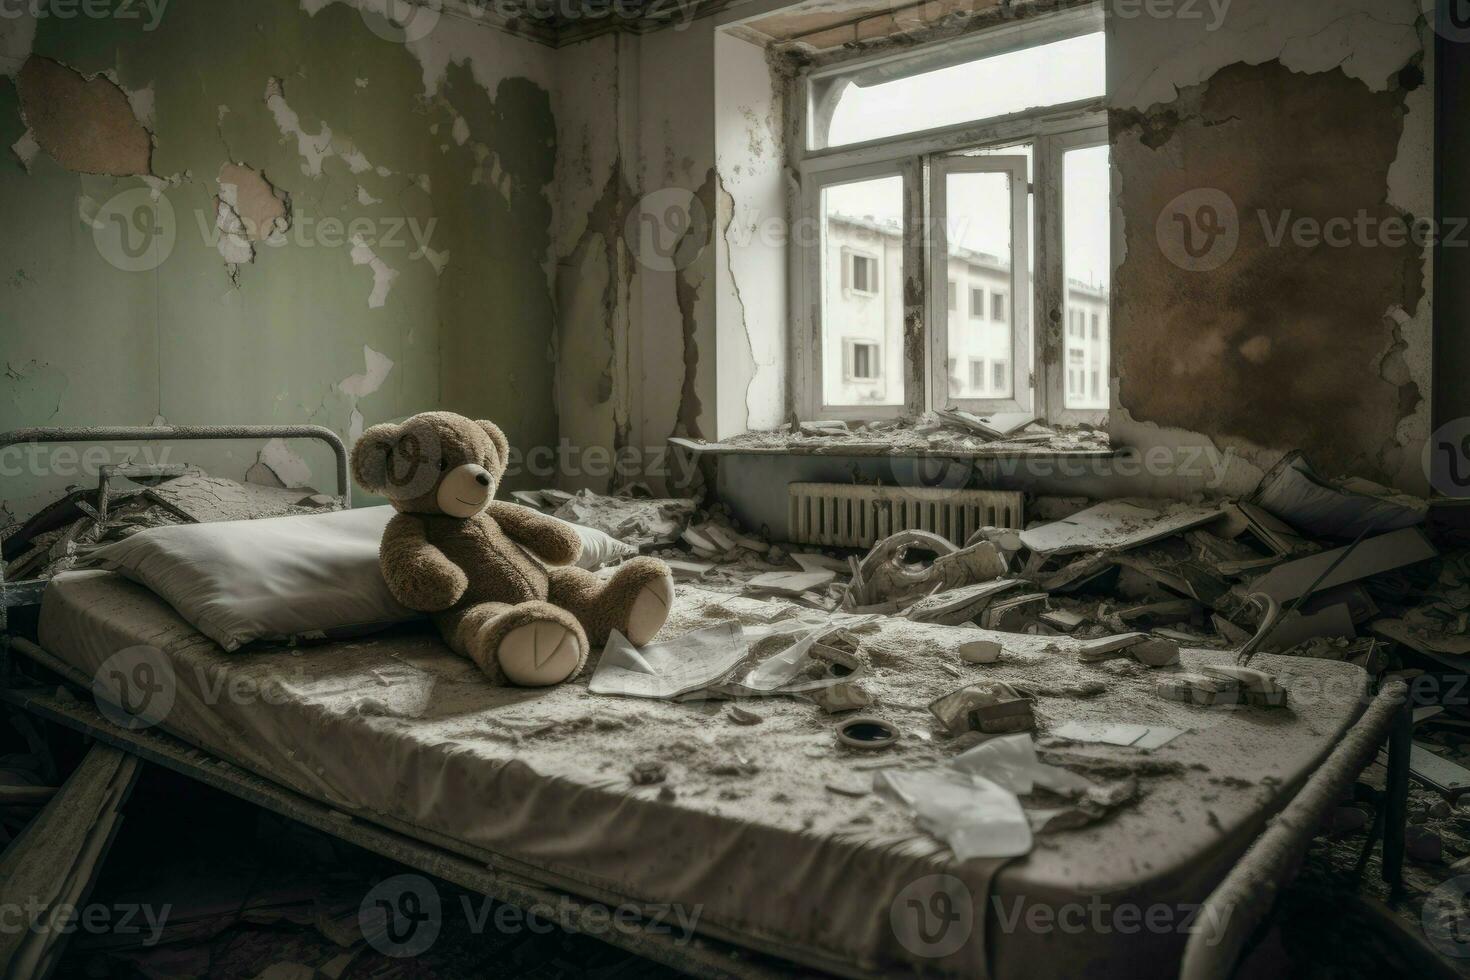 Bear on hospital bed, bombed city. Generate Ai photo